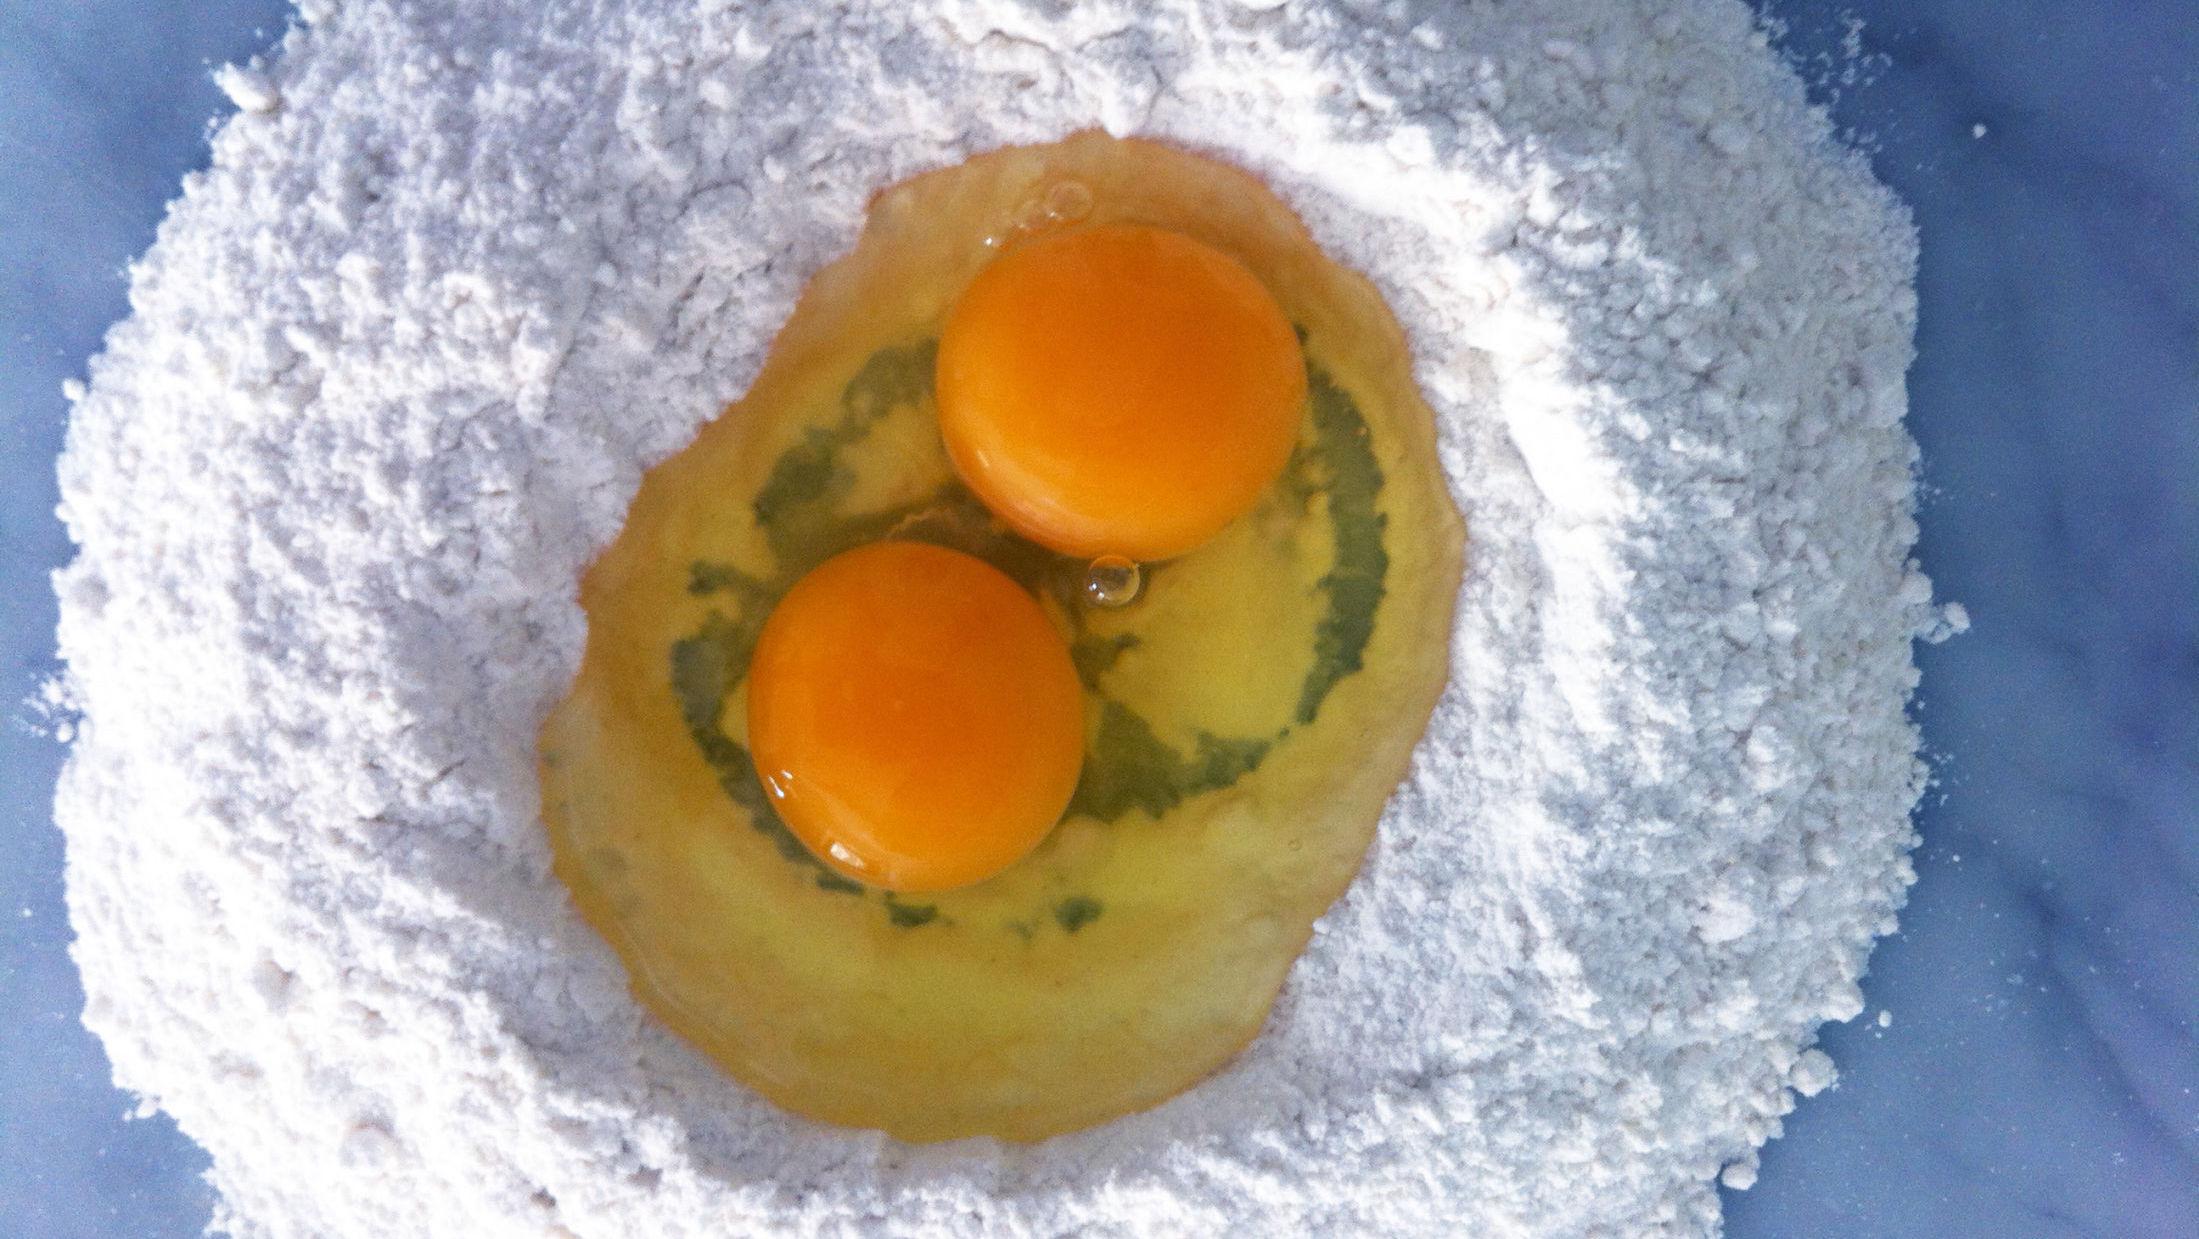 ENKEL LYKKE: Egg og mel. Foto: Jon Krog Pedersen.